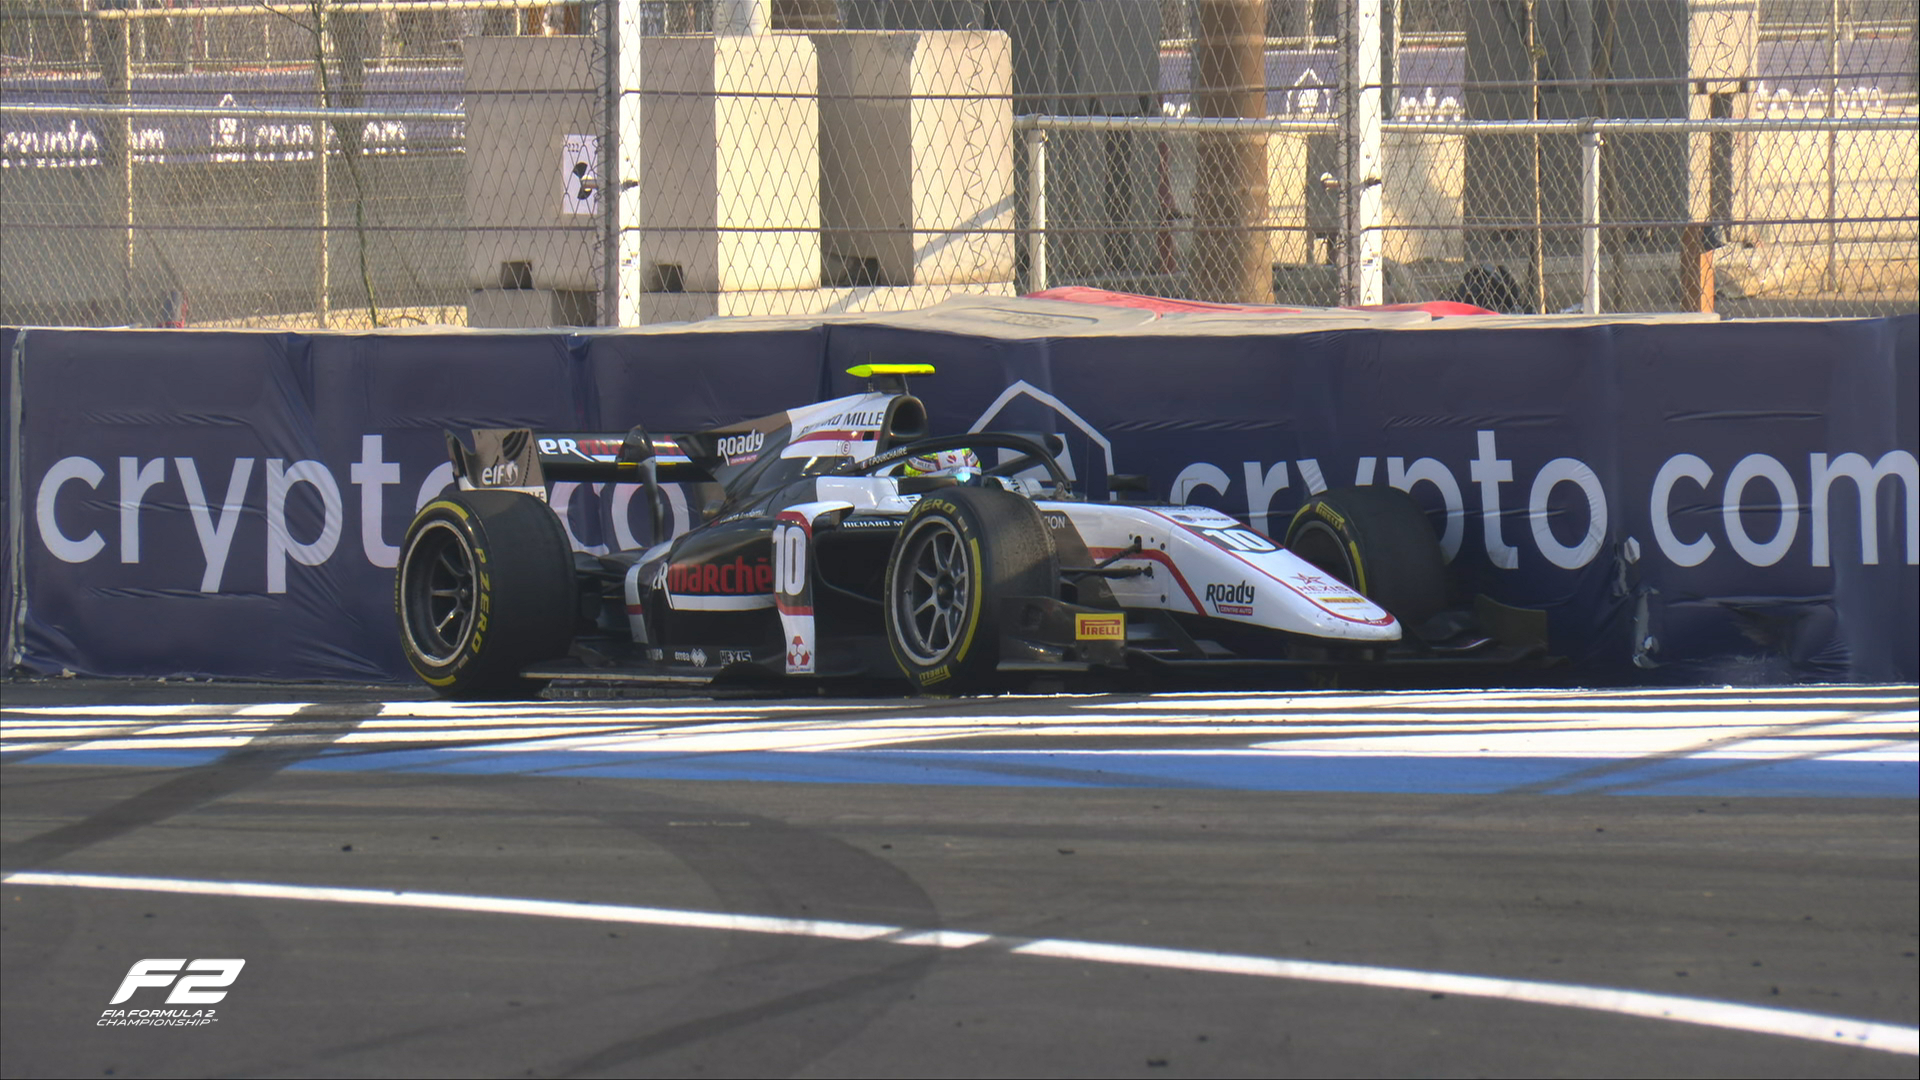 Маркус Армстронг выиграл первую гонку Формулы-2 в Саудовской Аравии, россиянин Роберт Шварцман пятый после штрафа